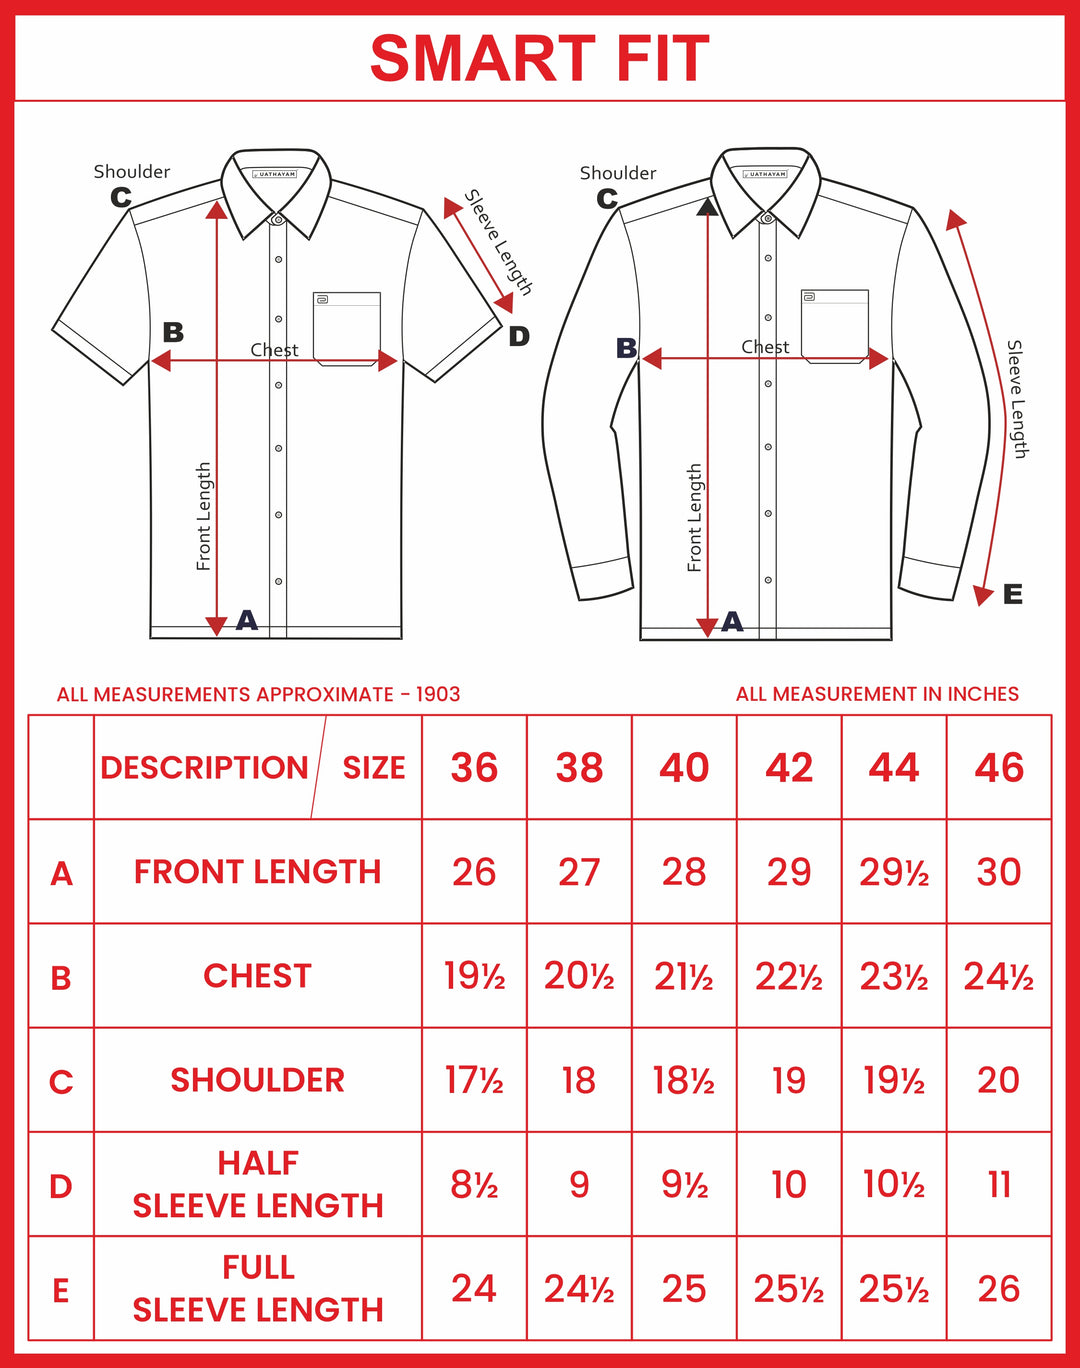 Ariser Linen Feel Solid Cotton Rich Smart Fit Half Sleeve Shirt for Men - LF2008